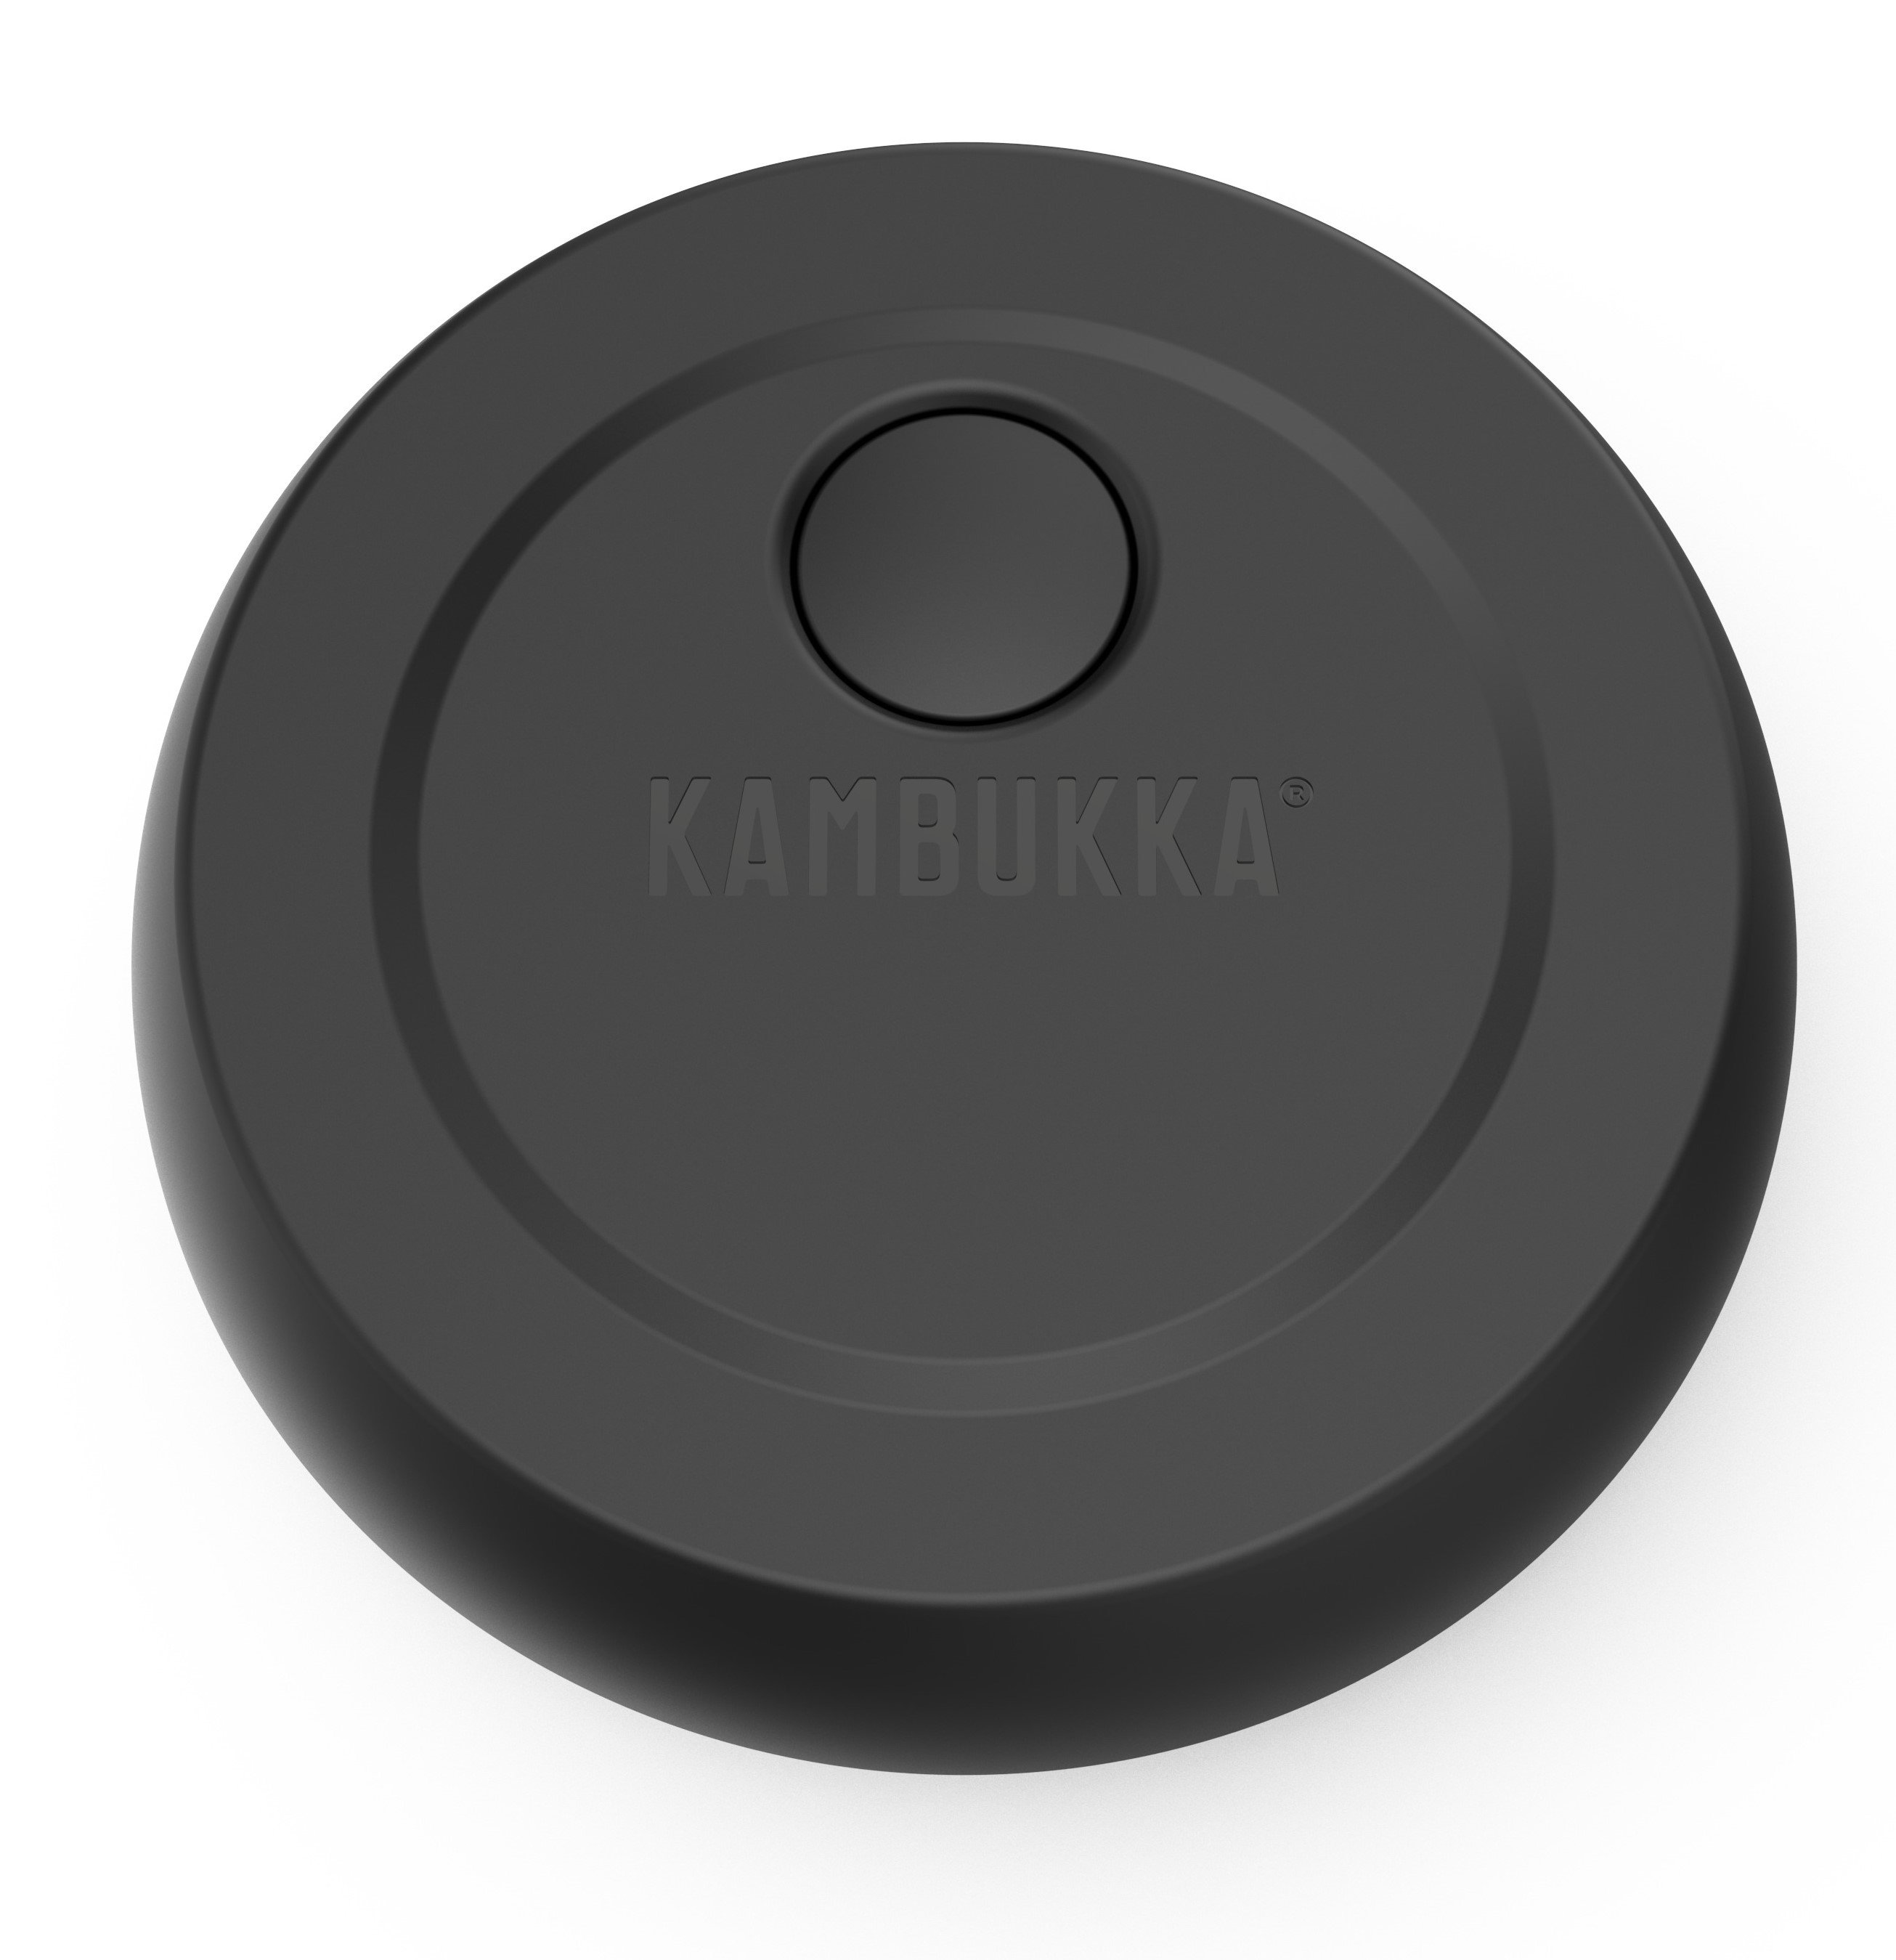 Термоконтейнер для еды Kambukka Bora, 600 мл, черный (11-06010) - фото 4